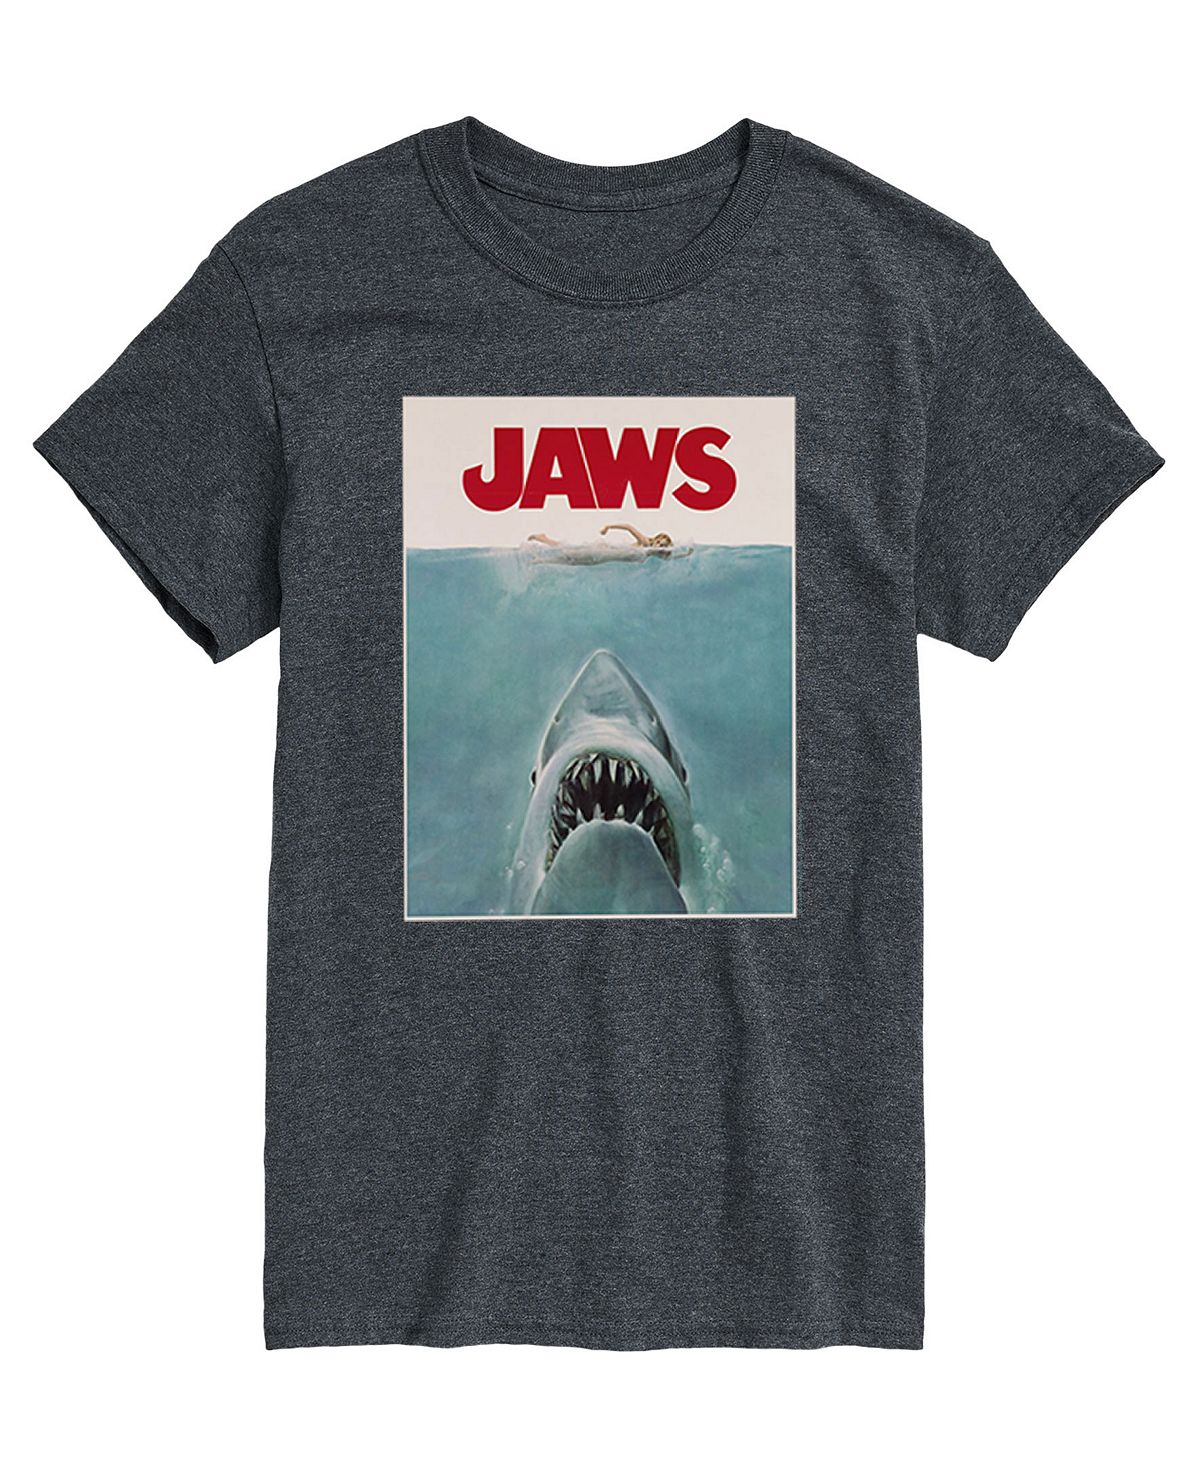 Мужская футболка с плакатом Jaws AIRWAVES мужская футболка с длинным рукавом jaws patriotic airwaves черный